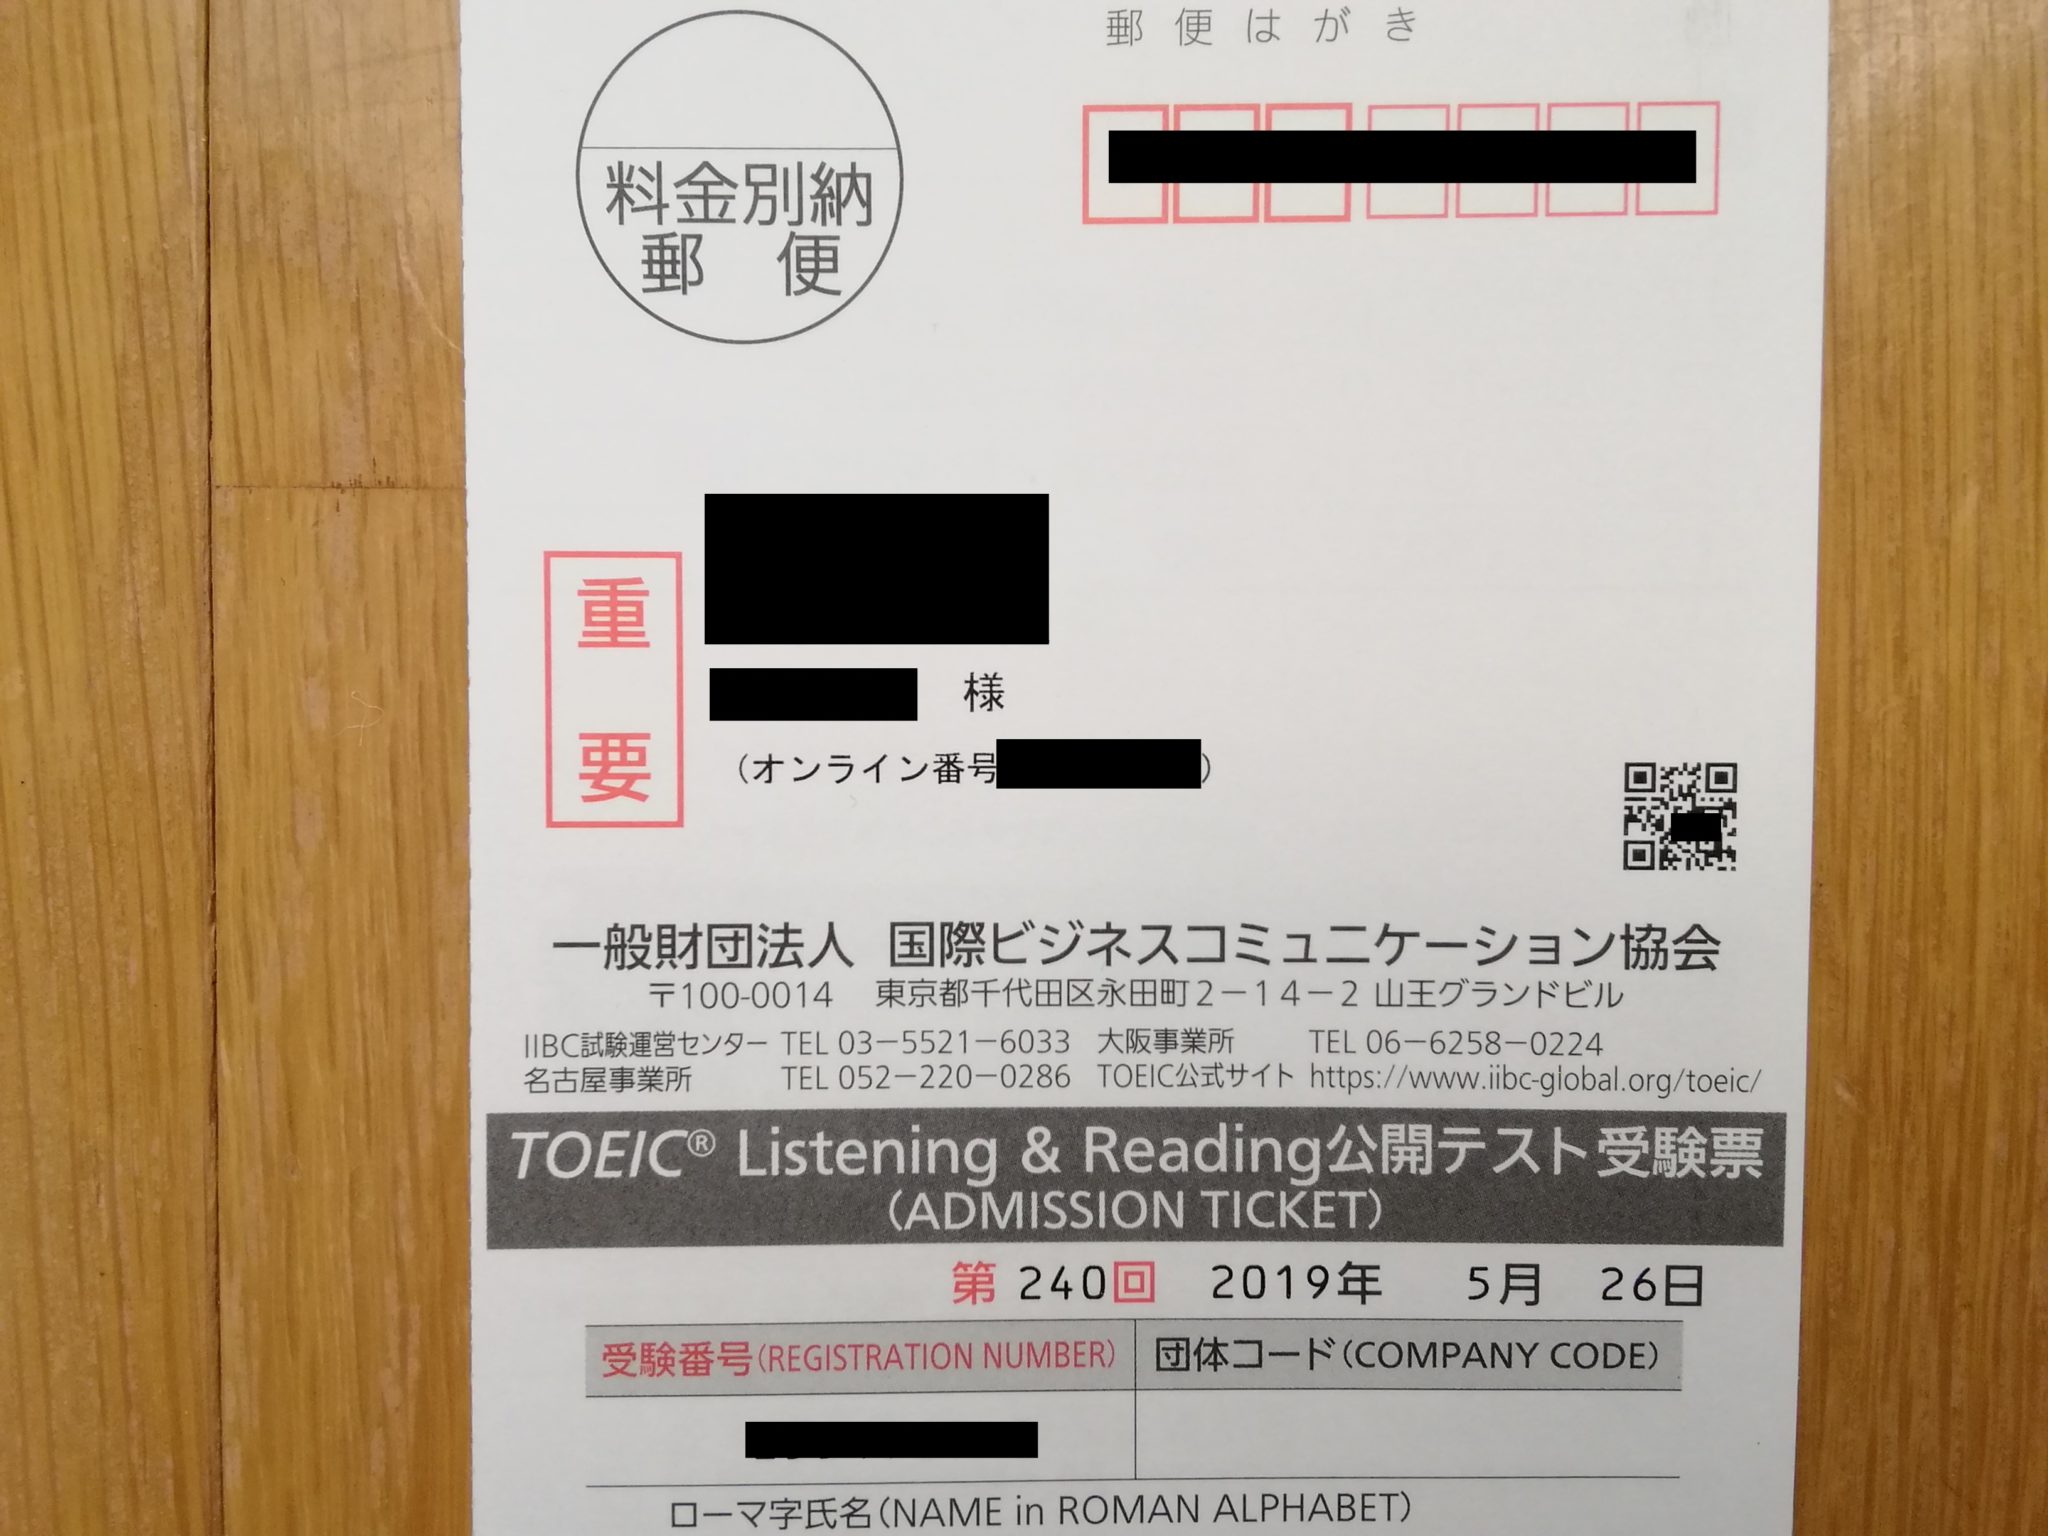 2019年5月26日TOEIC受験票 (1)